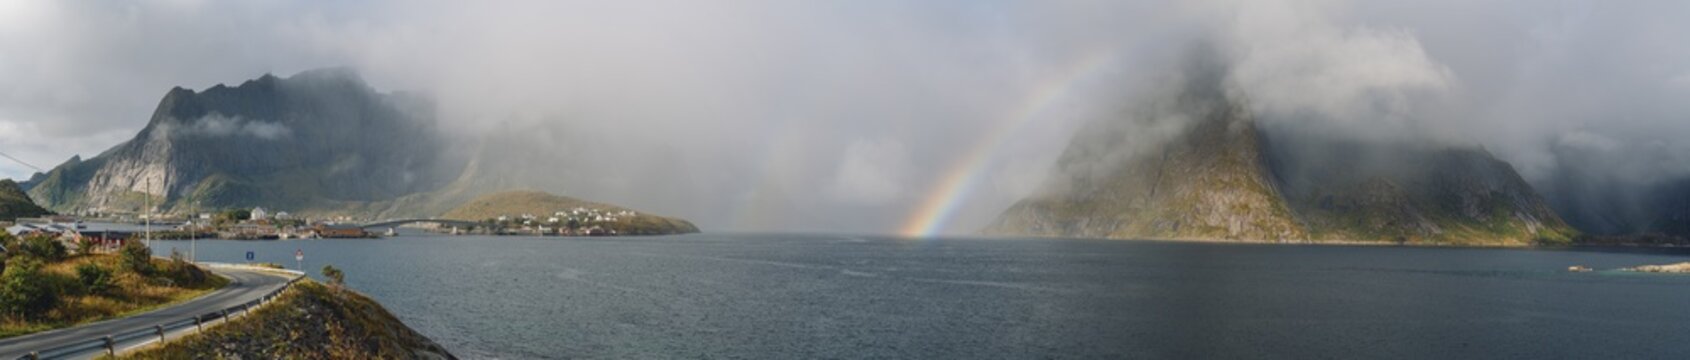 Regenbogen bei Hamnøy auf den Lofoten